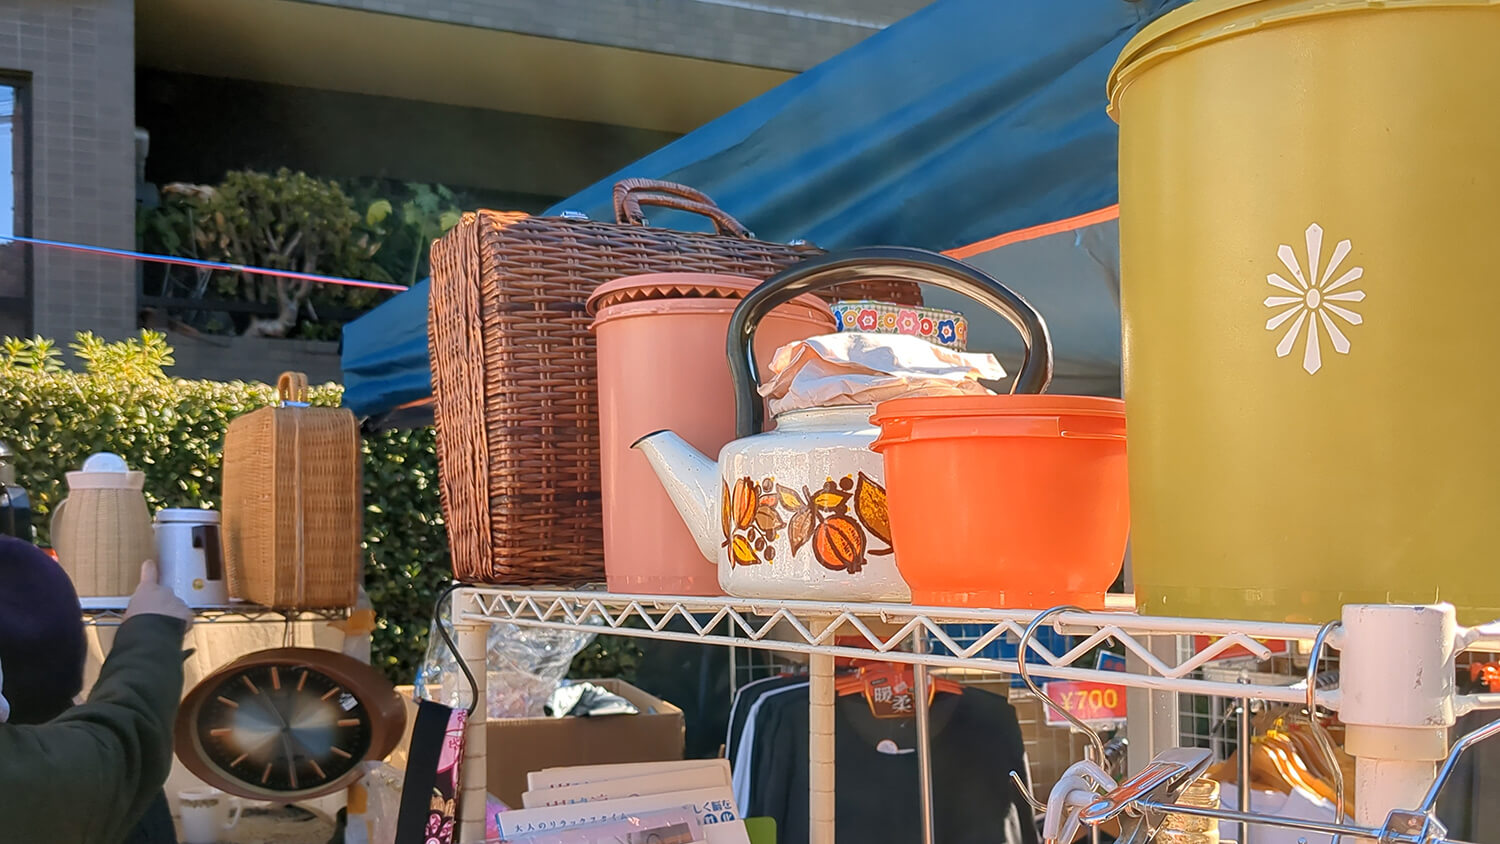 この画像は2022年ボロ市のノスタルジックなお鍋や、やかんを販売している露店を撮影した写真です